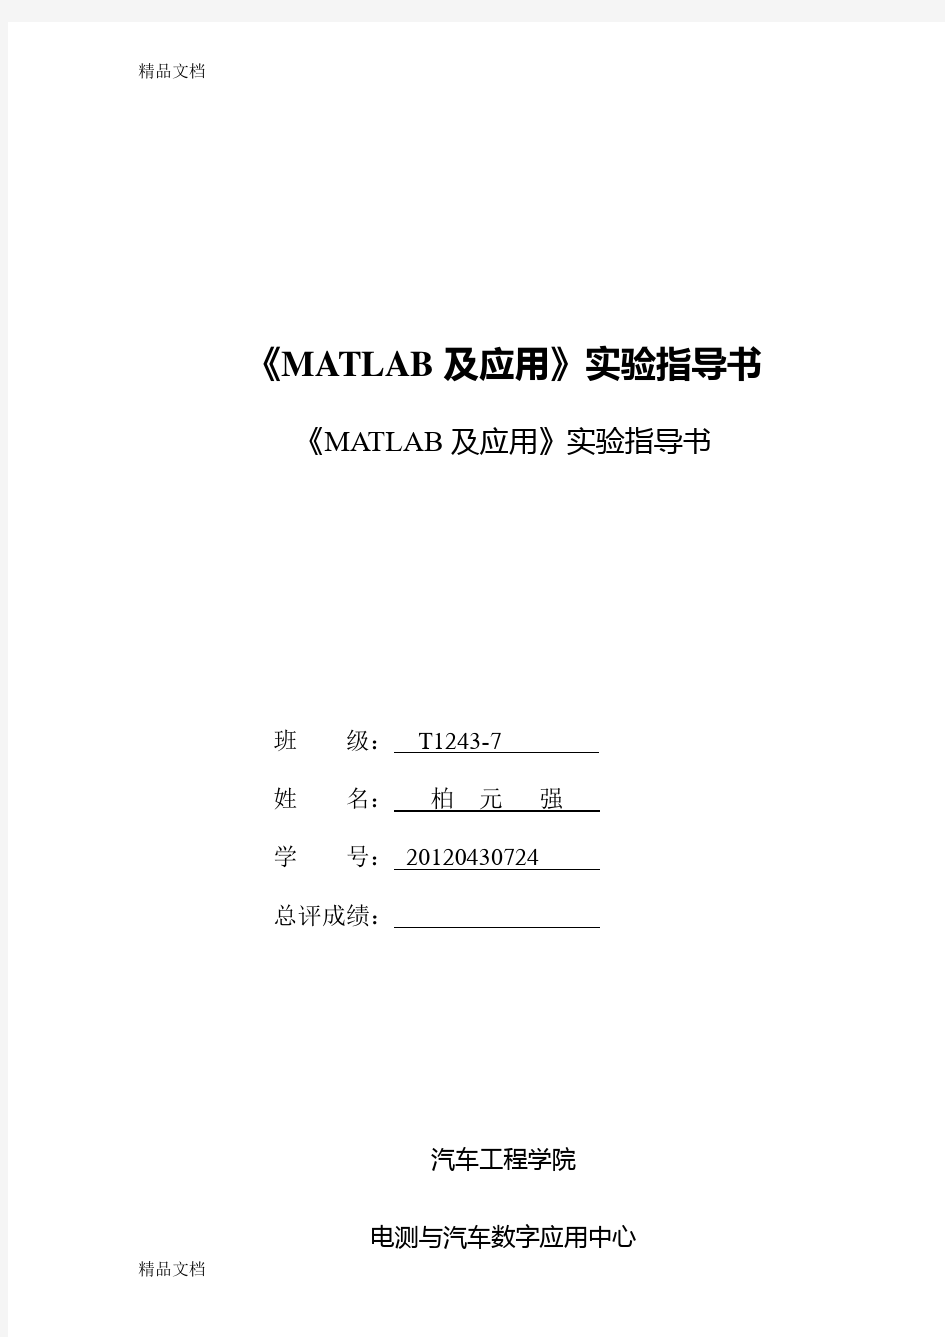 最新MATLAB基础教程-薛山第二版-课后习题答案